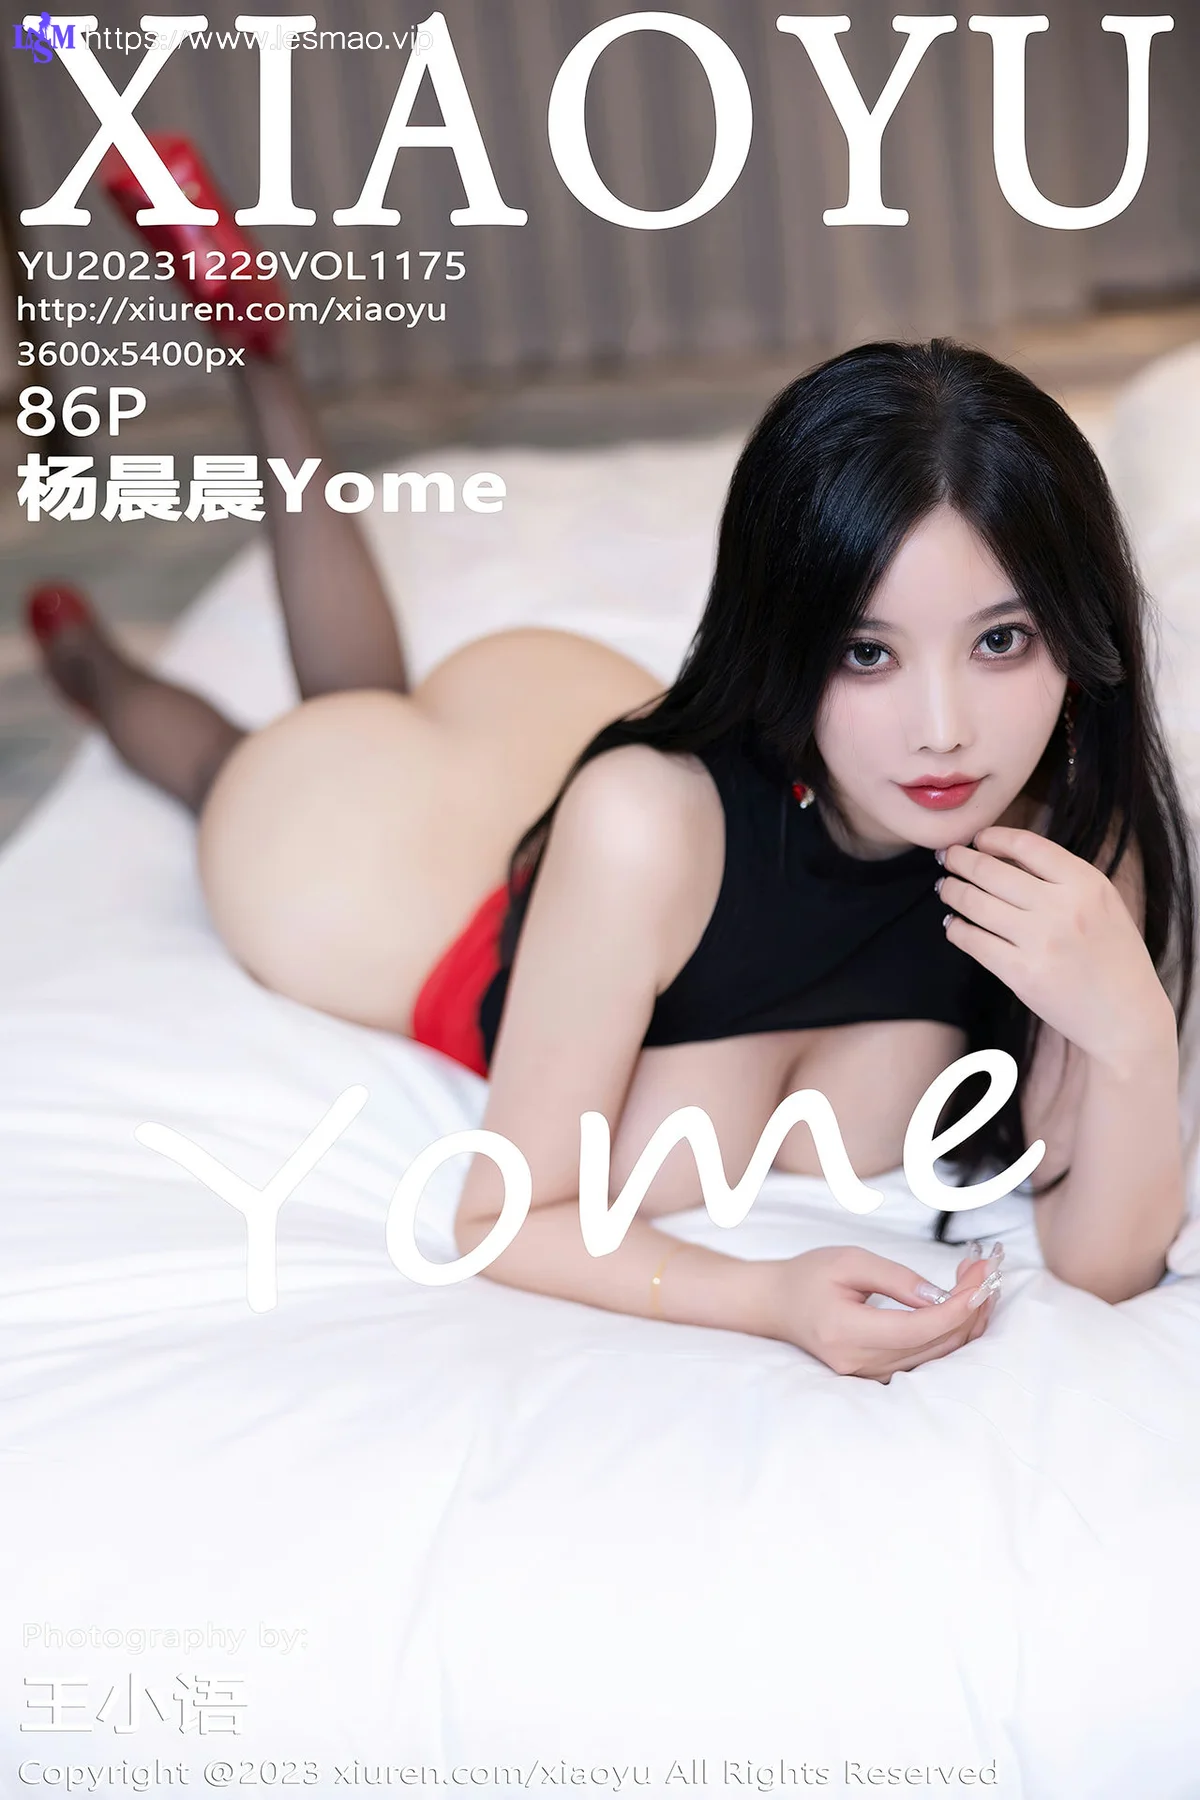 XIAOYU  语画  Vol.1175  杨晨晨Yome 红色短裙性感写真11 - 7